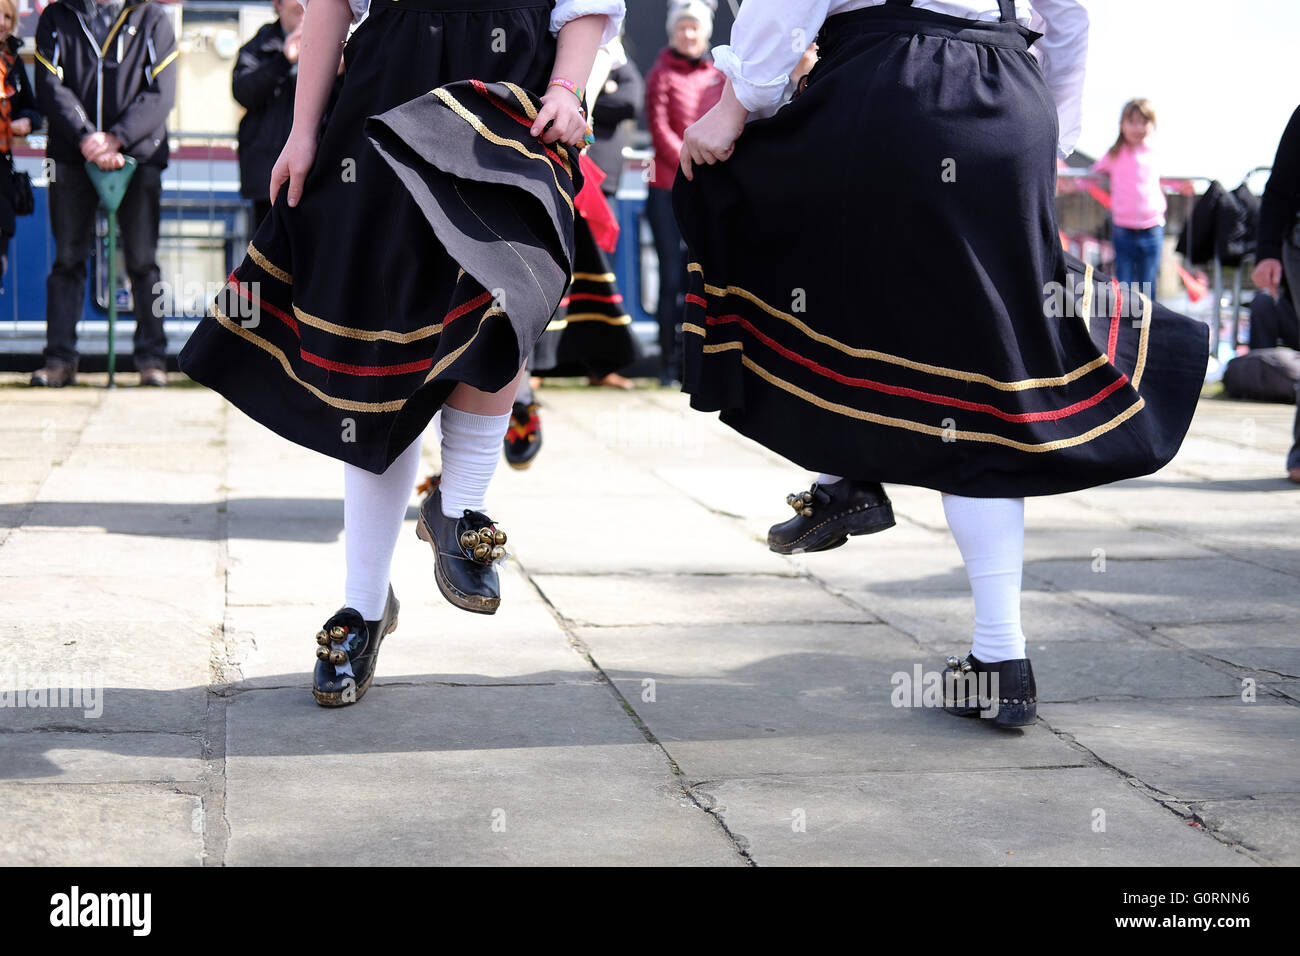 Pieds d'une troupe de danse montrant les sabots et les robes qui coule sur une chaussée en pierre du Yorkshire. Banque D'Images